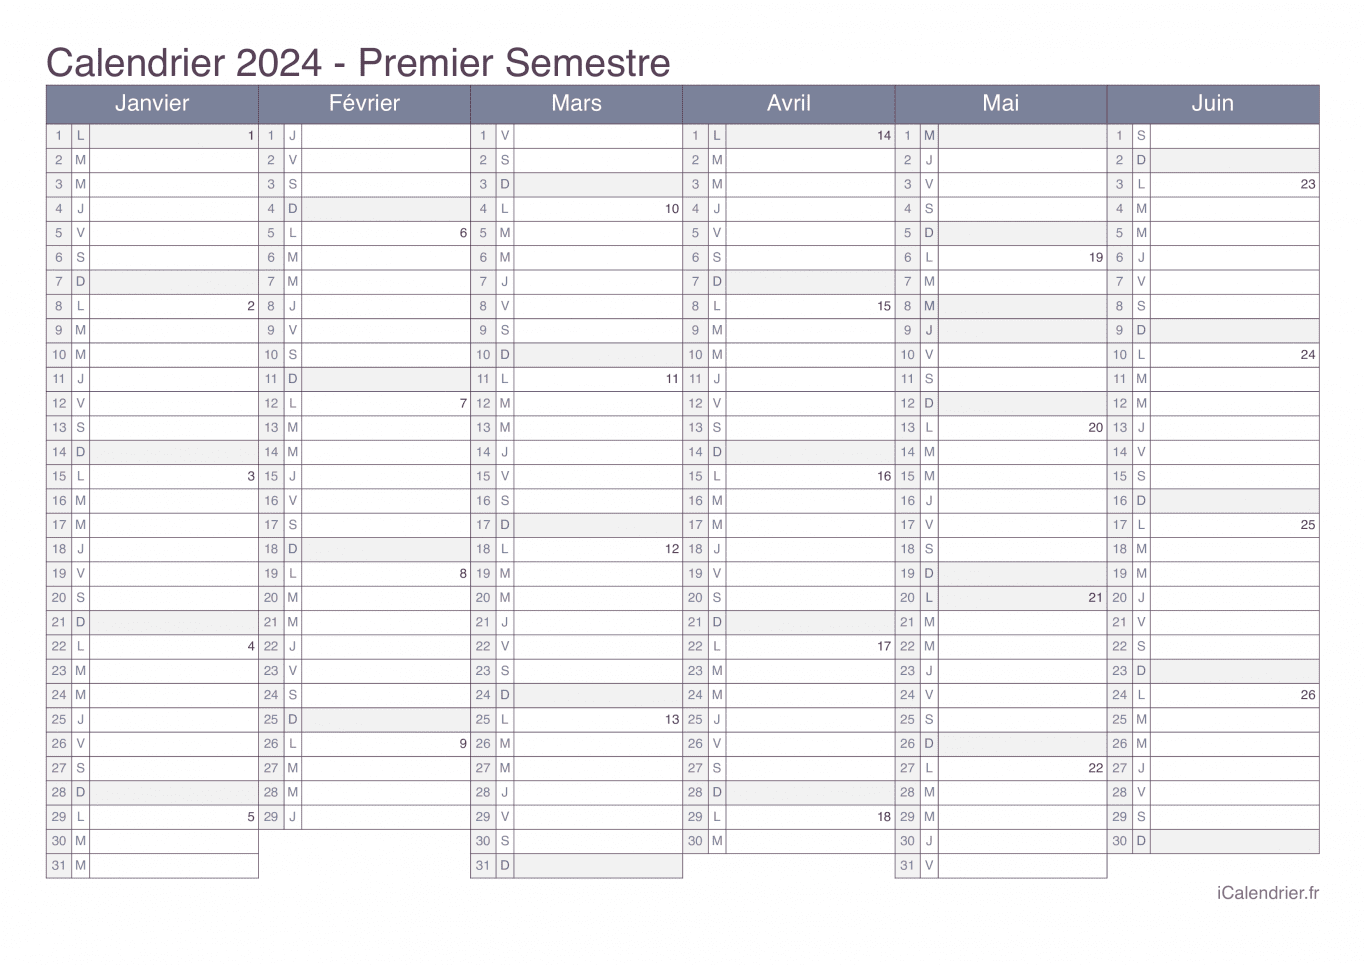 Calendrier par semestre avec numéros des semaines 2024 - Office